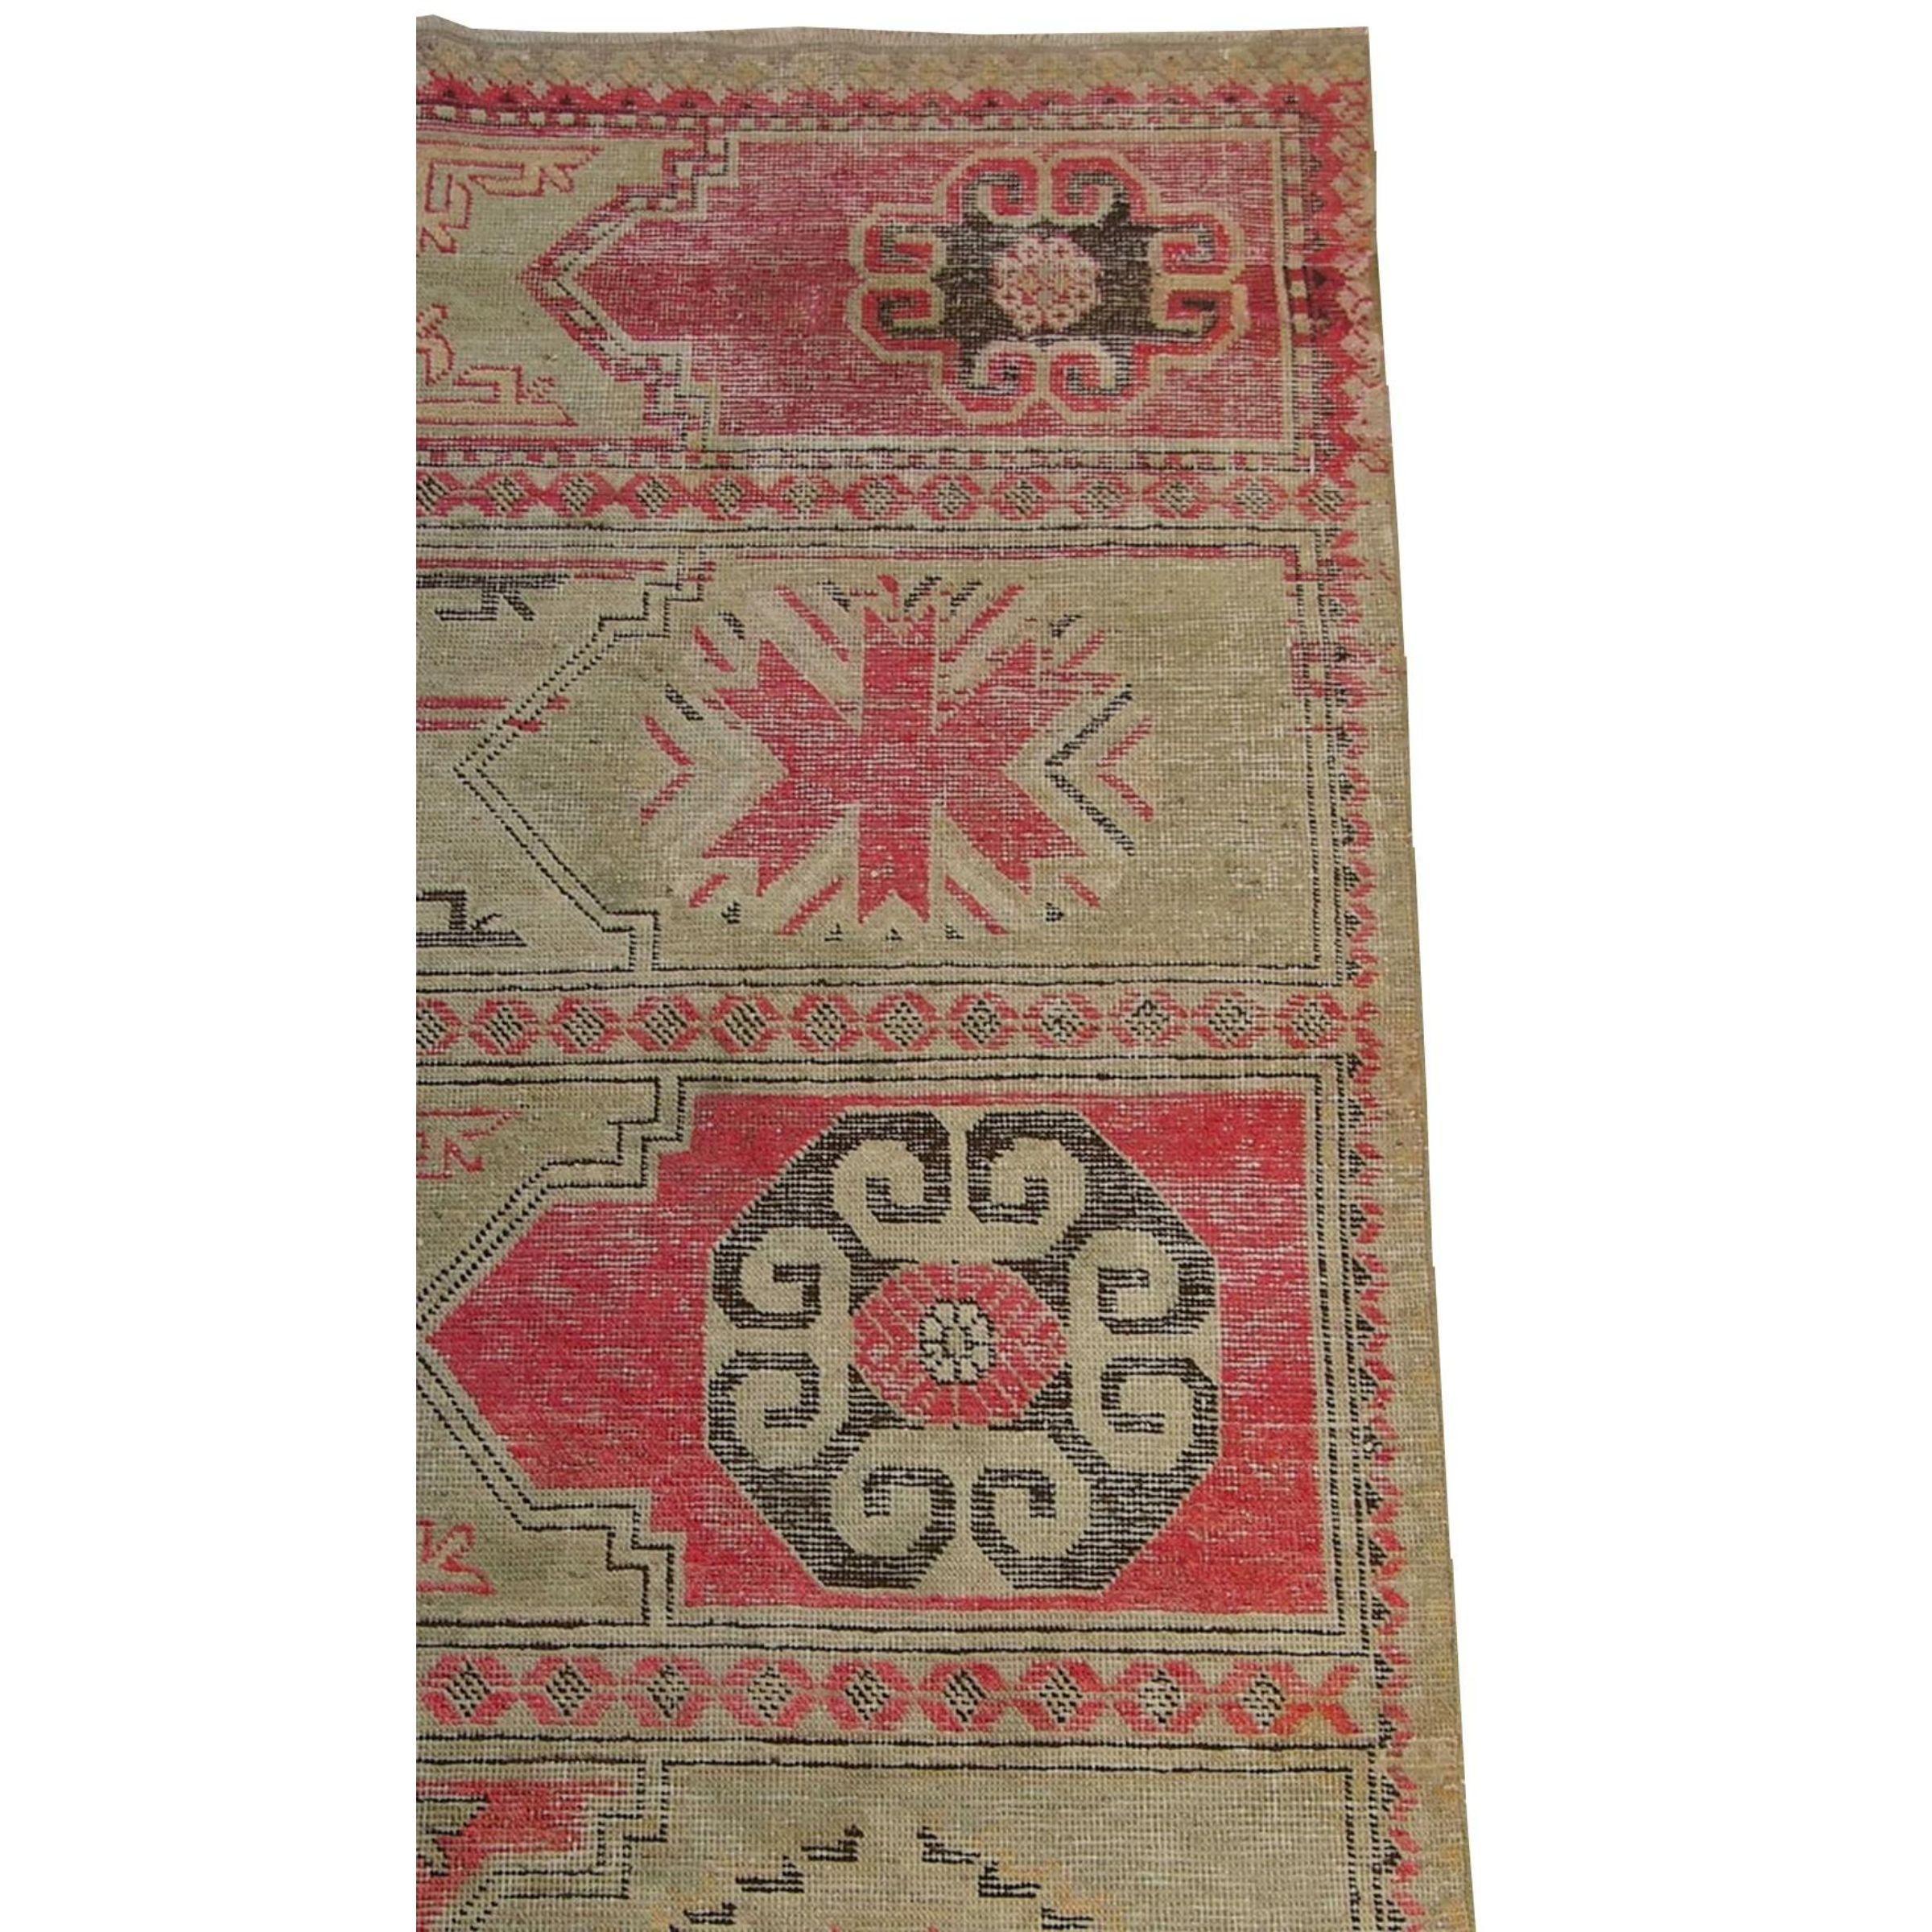 Nous vous proposons un authentique tapis Khotan Samarkand de 6'1'' X 2'6'', un tapis tribal et traditionnel fait de laine sur une base de coton au début du 19ème siècle par des tribus du nord-est de l'Asie. 